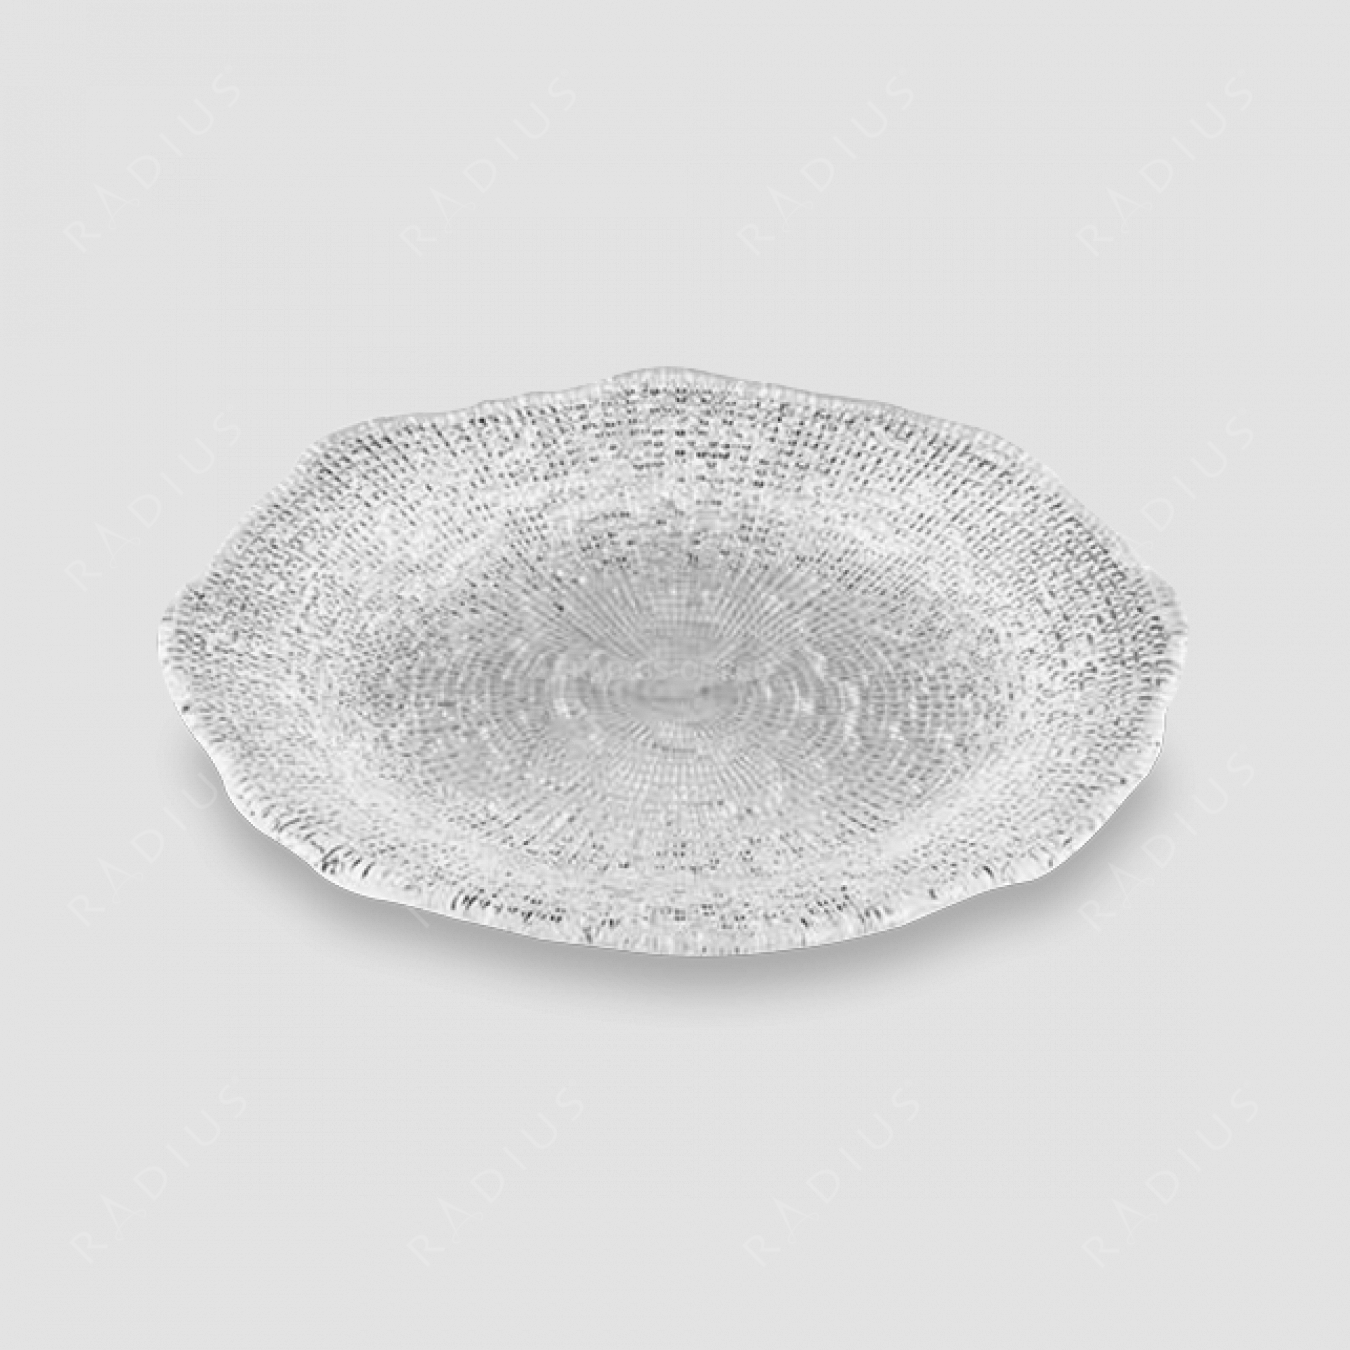 Тарелка обеденная 28 см, прозрачная, серия Diamante, IVV, Италия